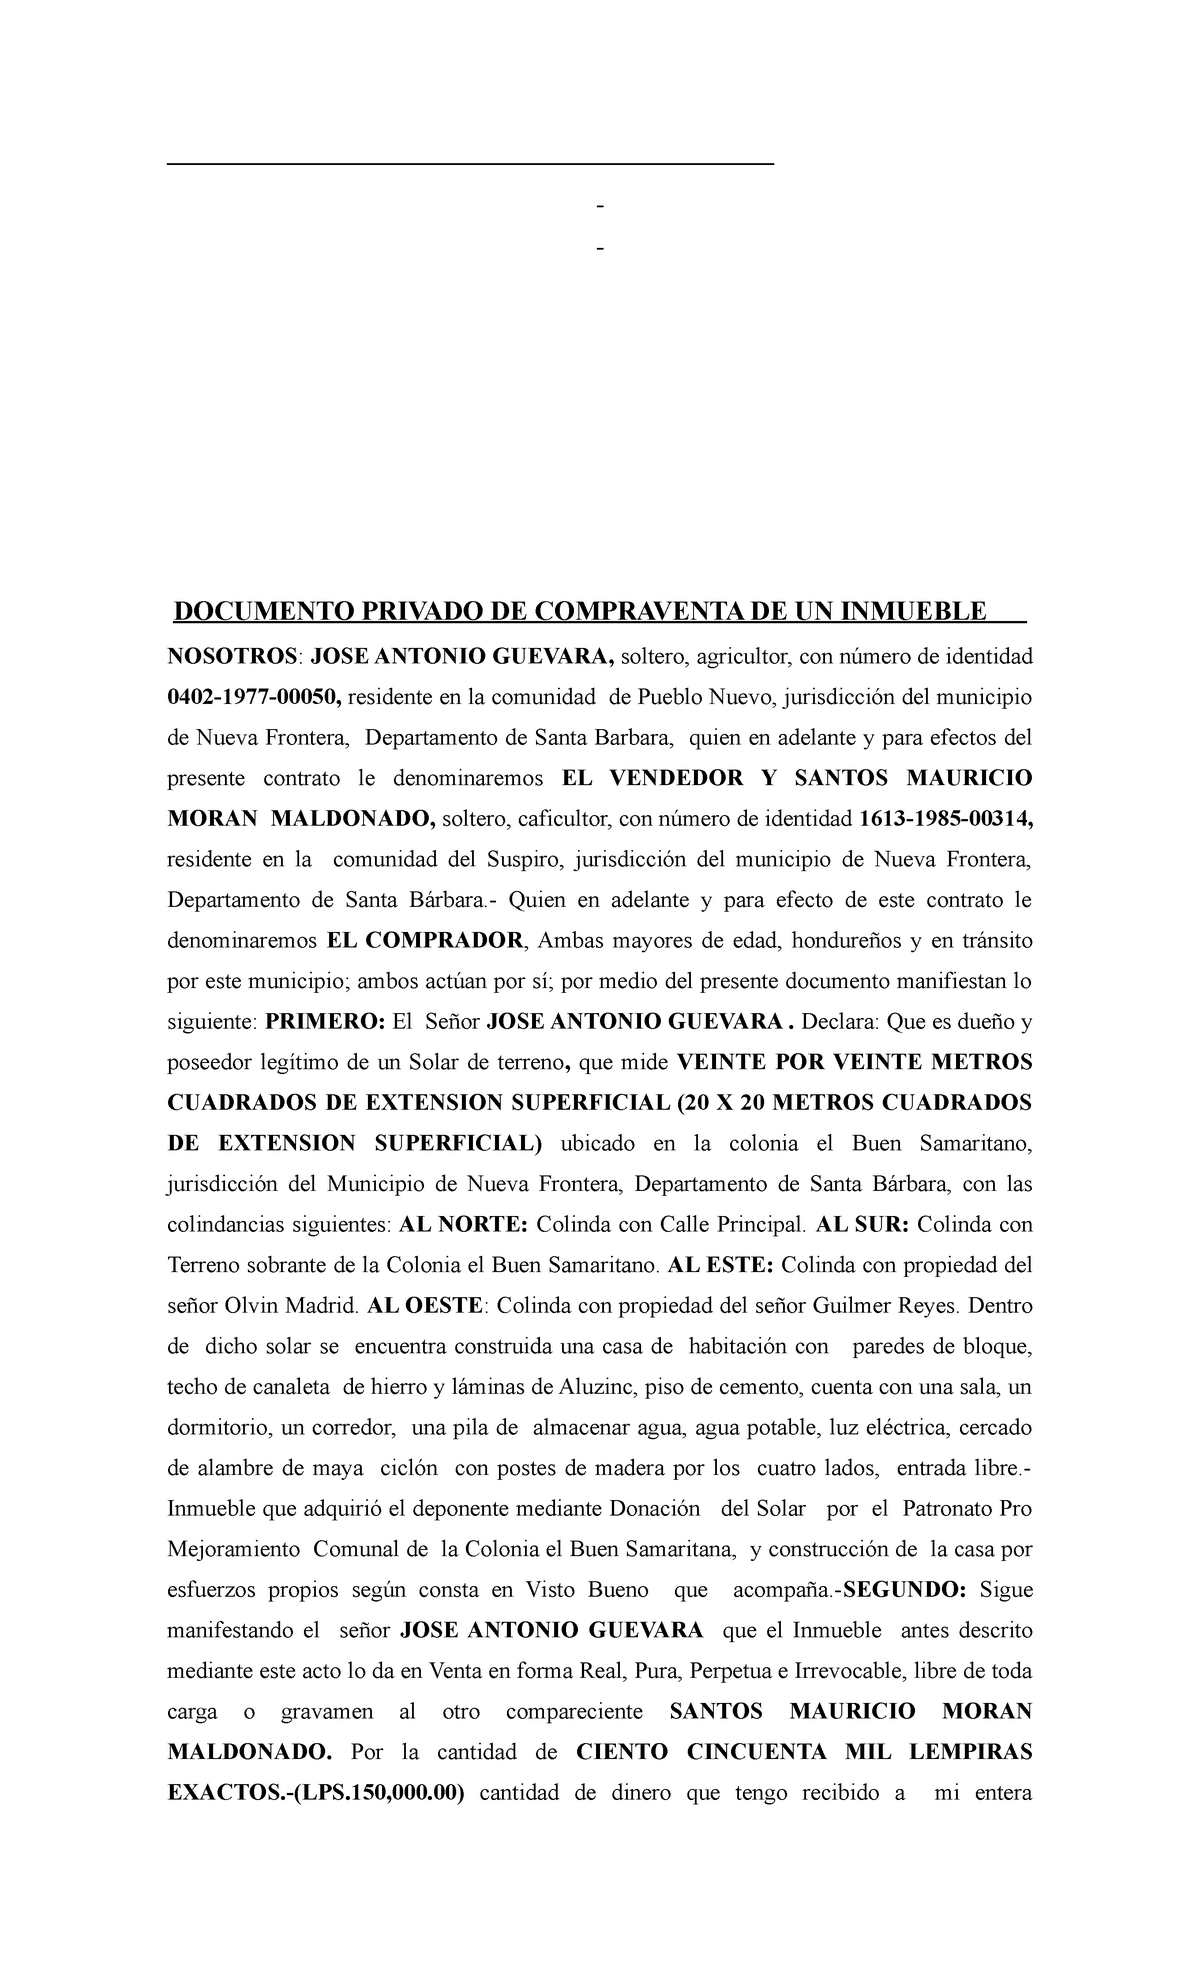 Documento De Compra Y Venta De Un Inmueble En El Area Notarial Documento Privado De 8530